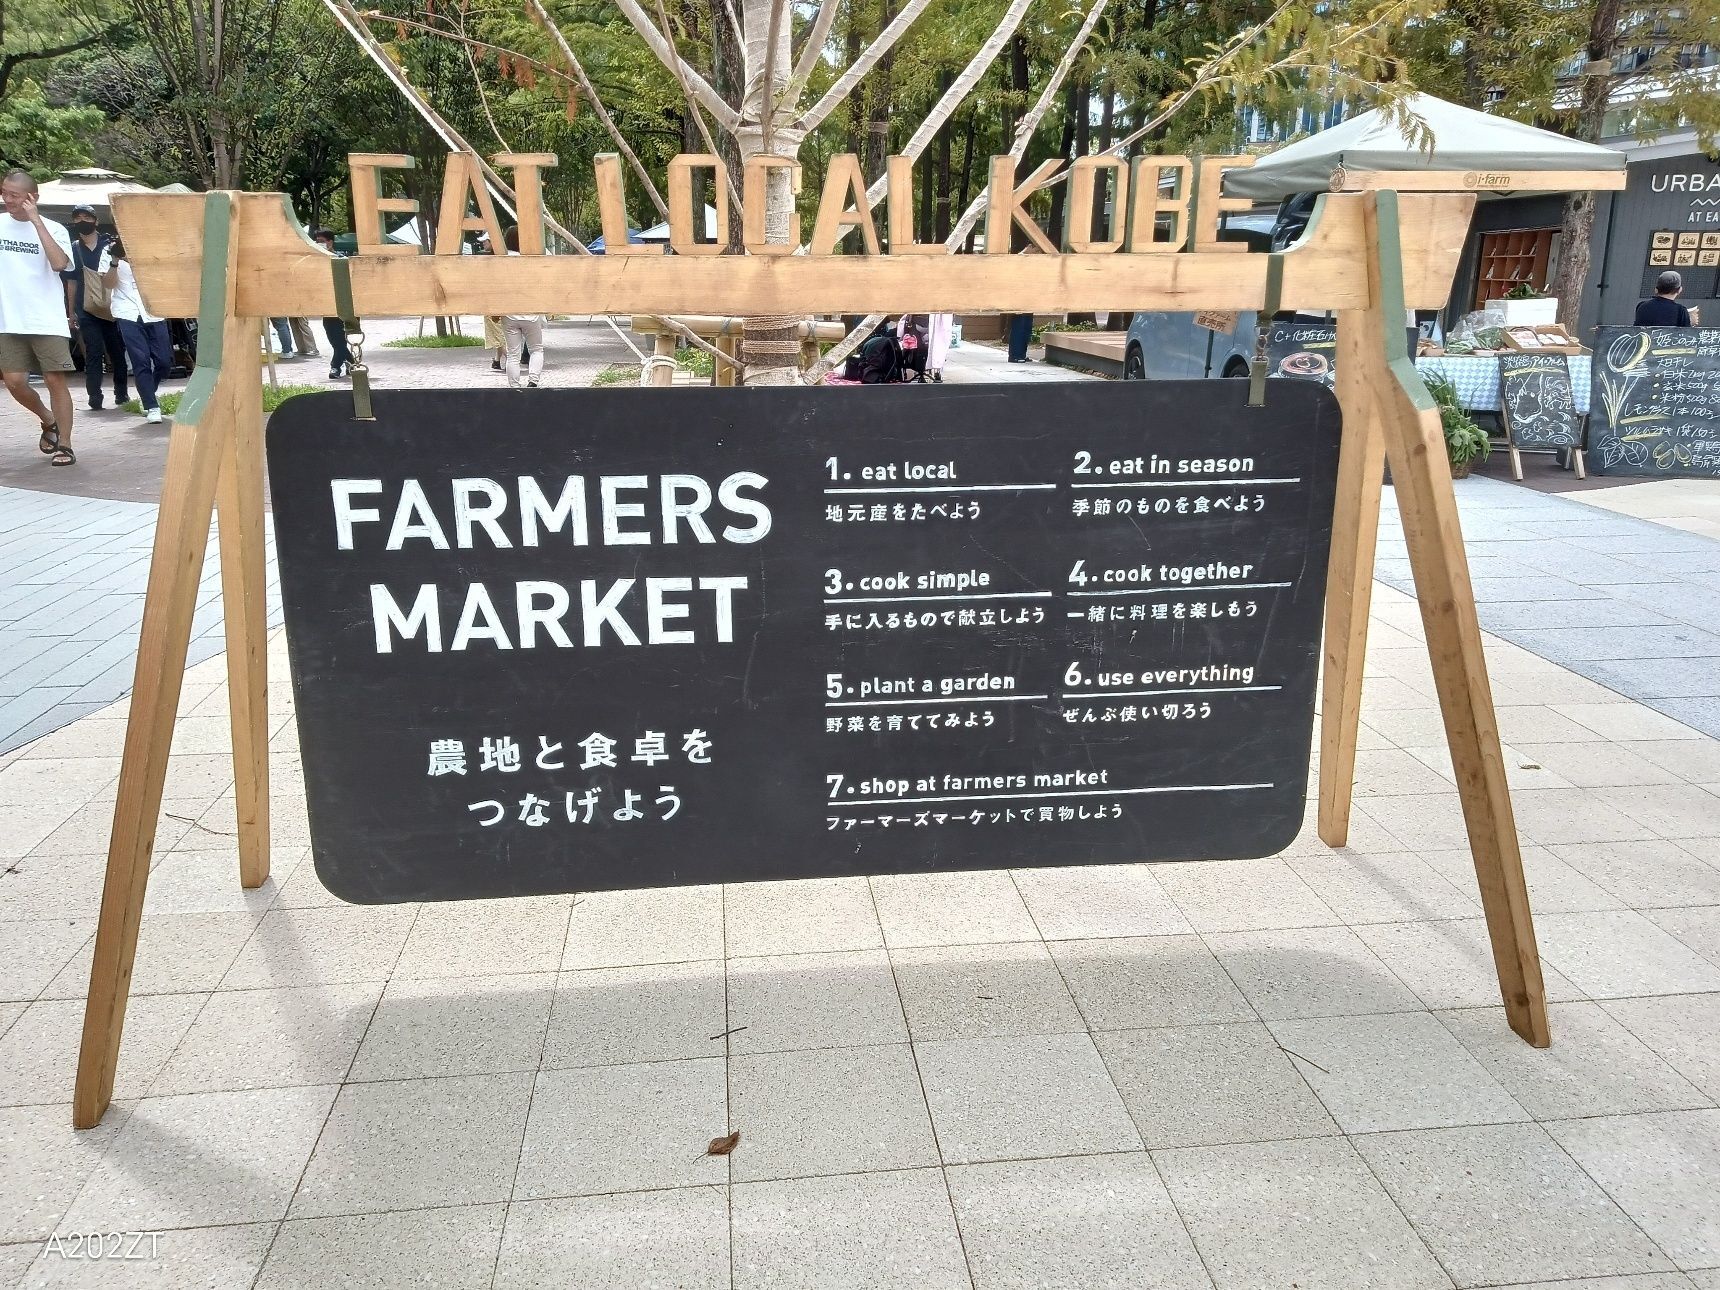 morning break Farmers market @東遊園地『coq1f』